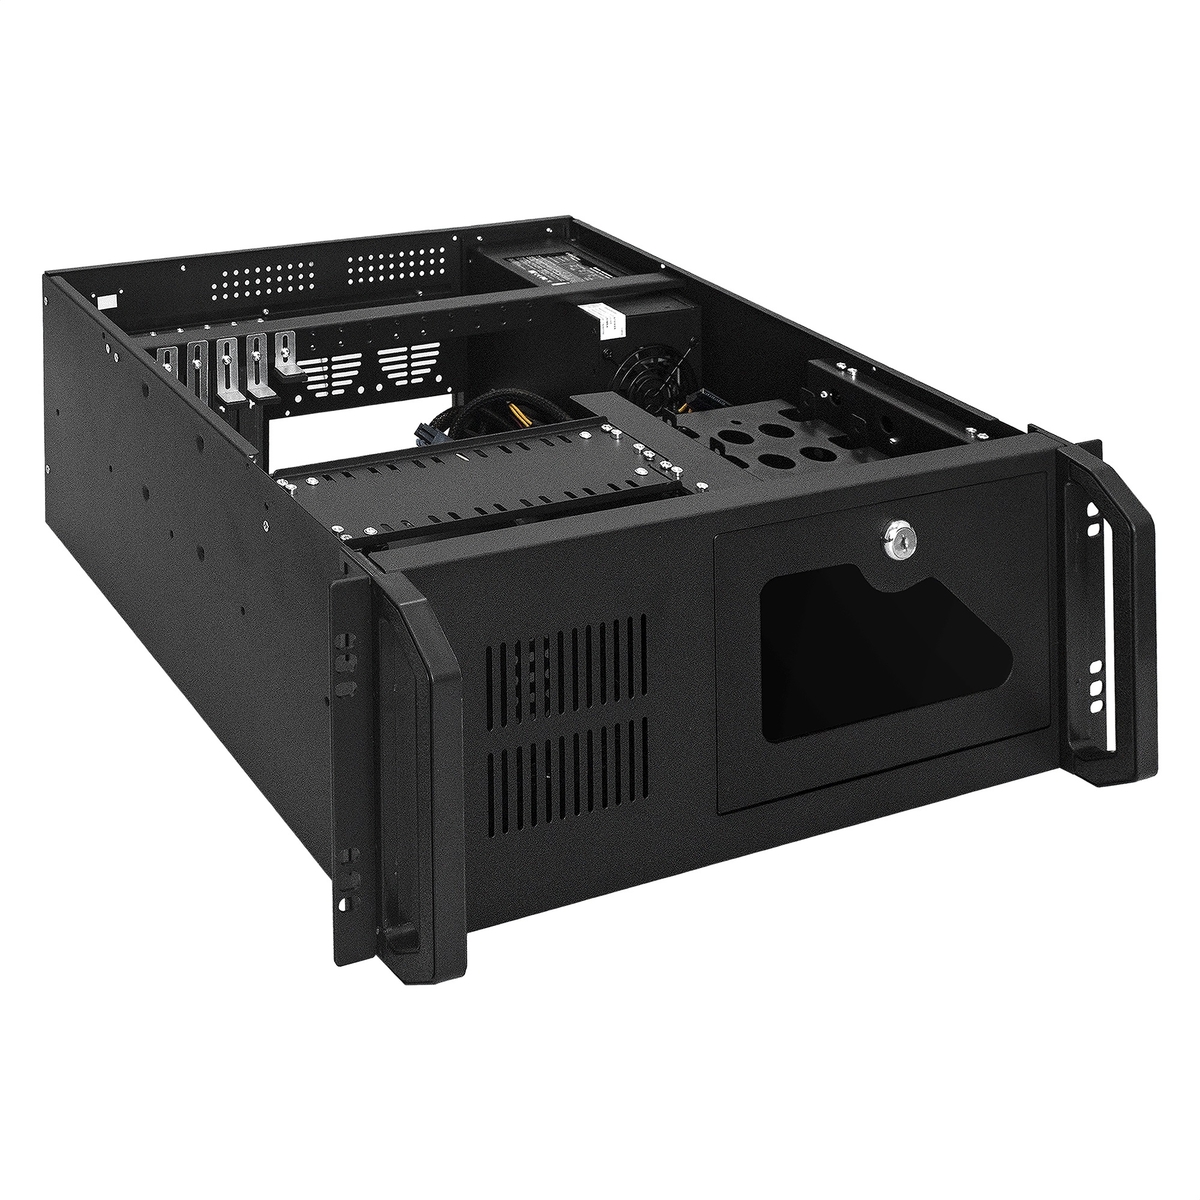 Server case ExeGate Pro 4U450-26/4U4020S/RM-1200ADS